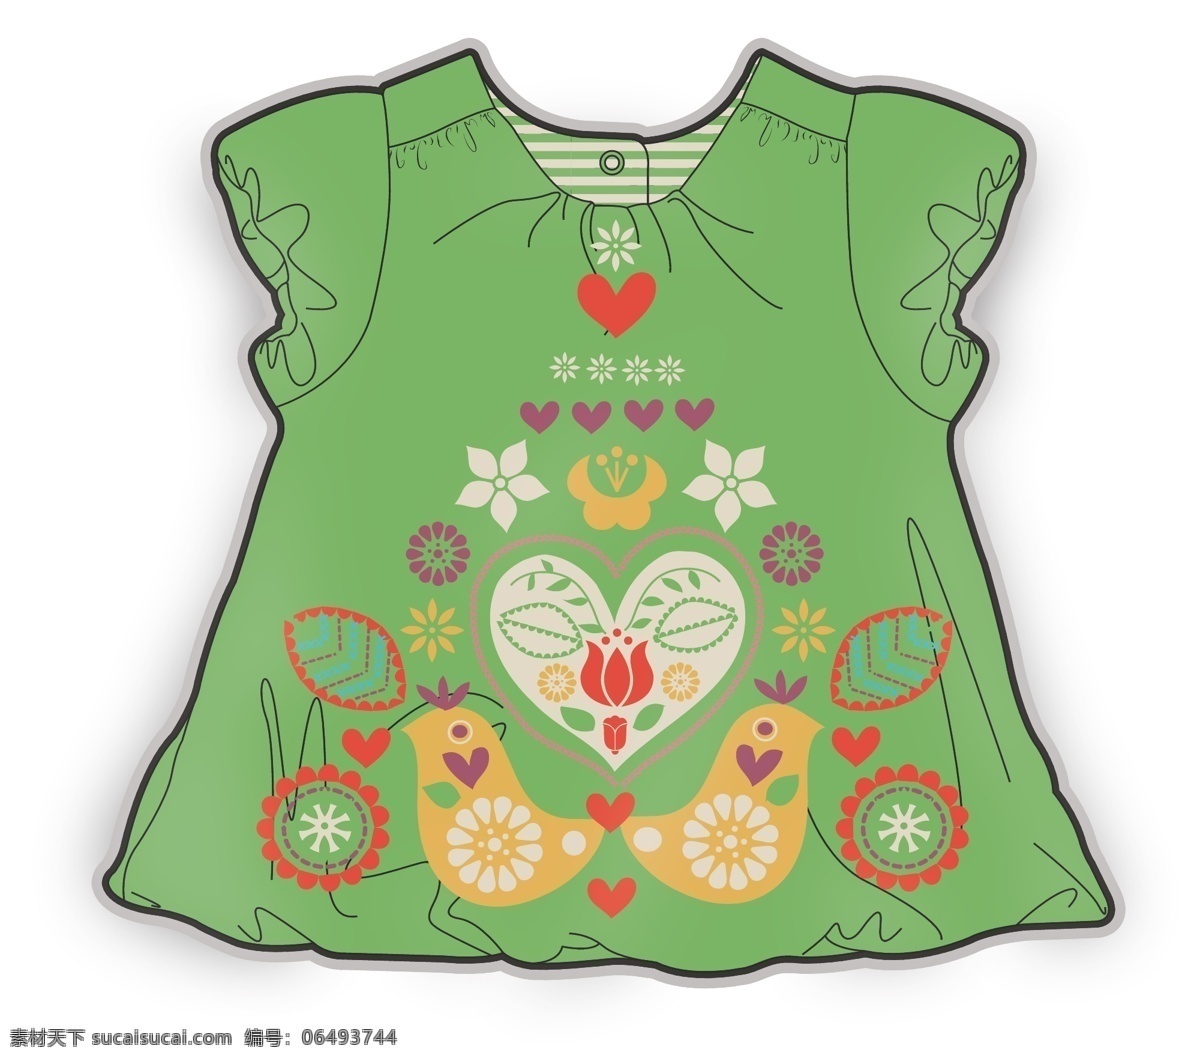 绿色 短袖 女 宝宝 服装设计 彩色 矢量 原稿 娃娃裙 儿童服装设计 可爱 黑白 手绘 保暖 线条 源文件 童装 棉质